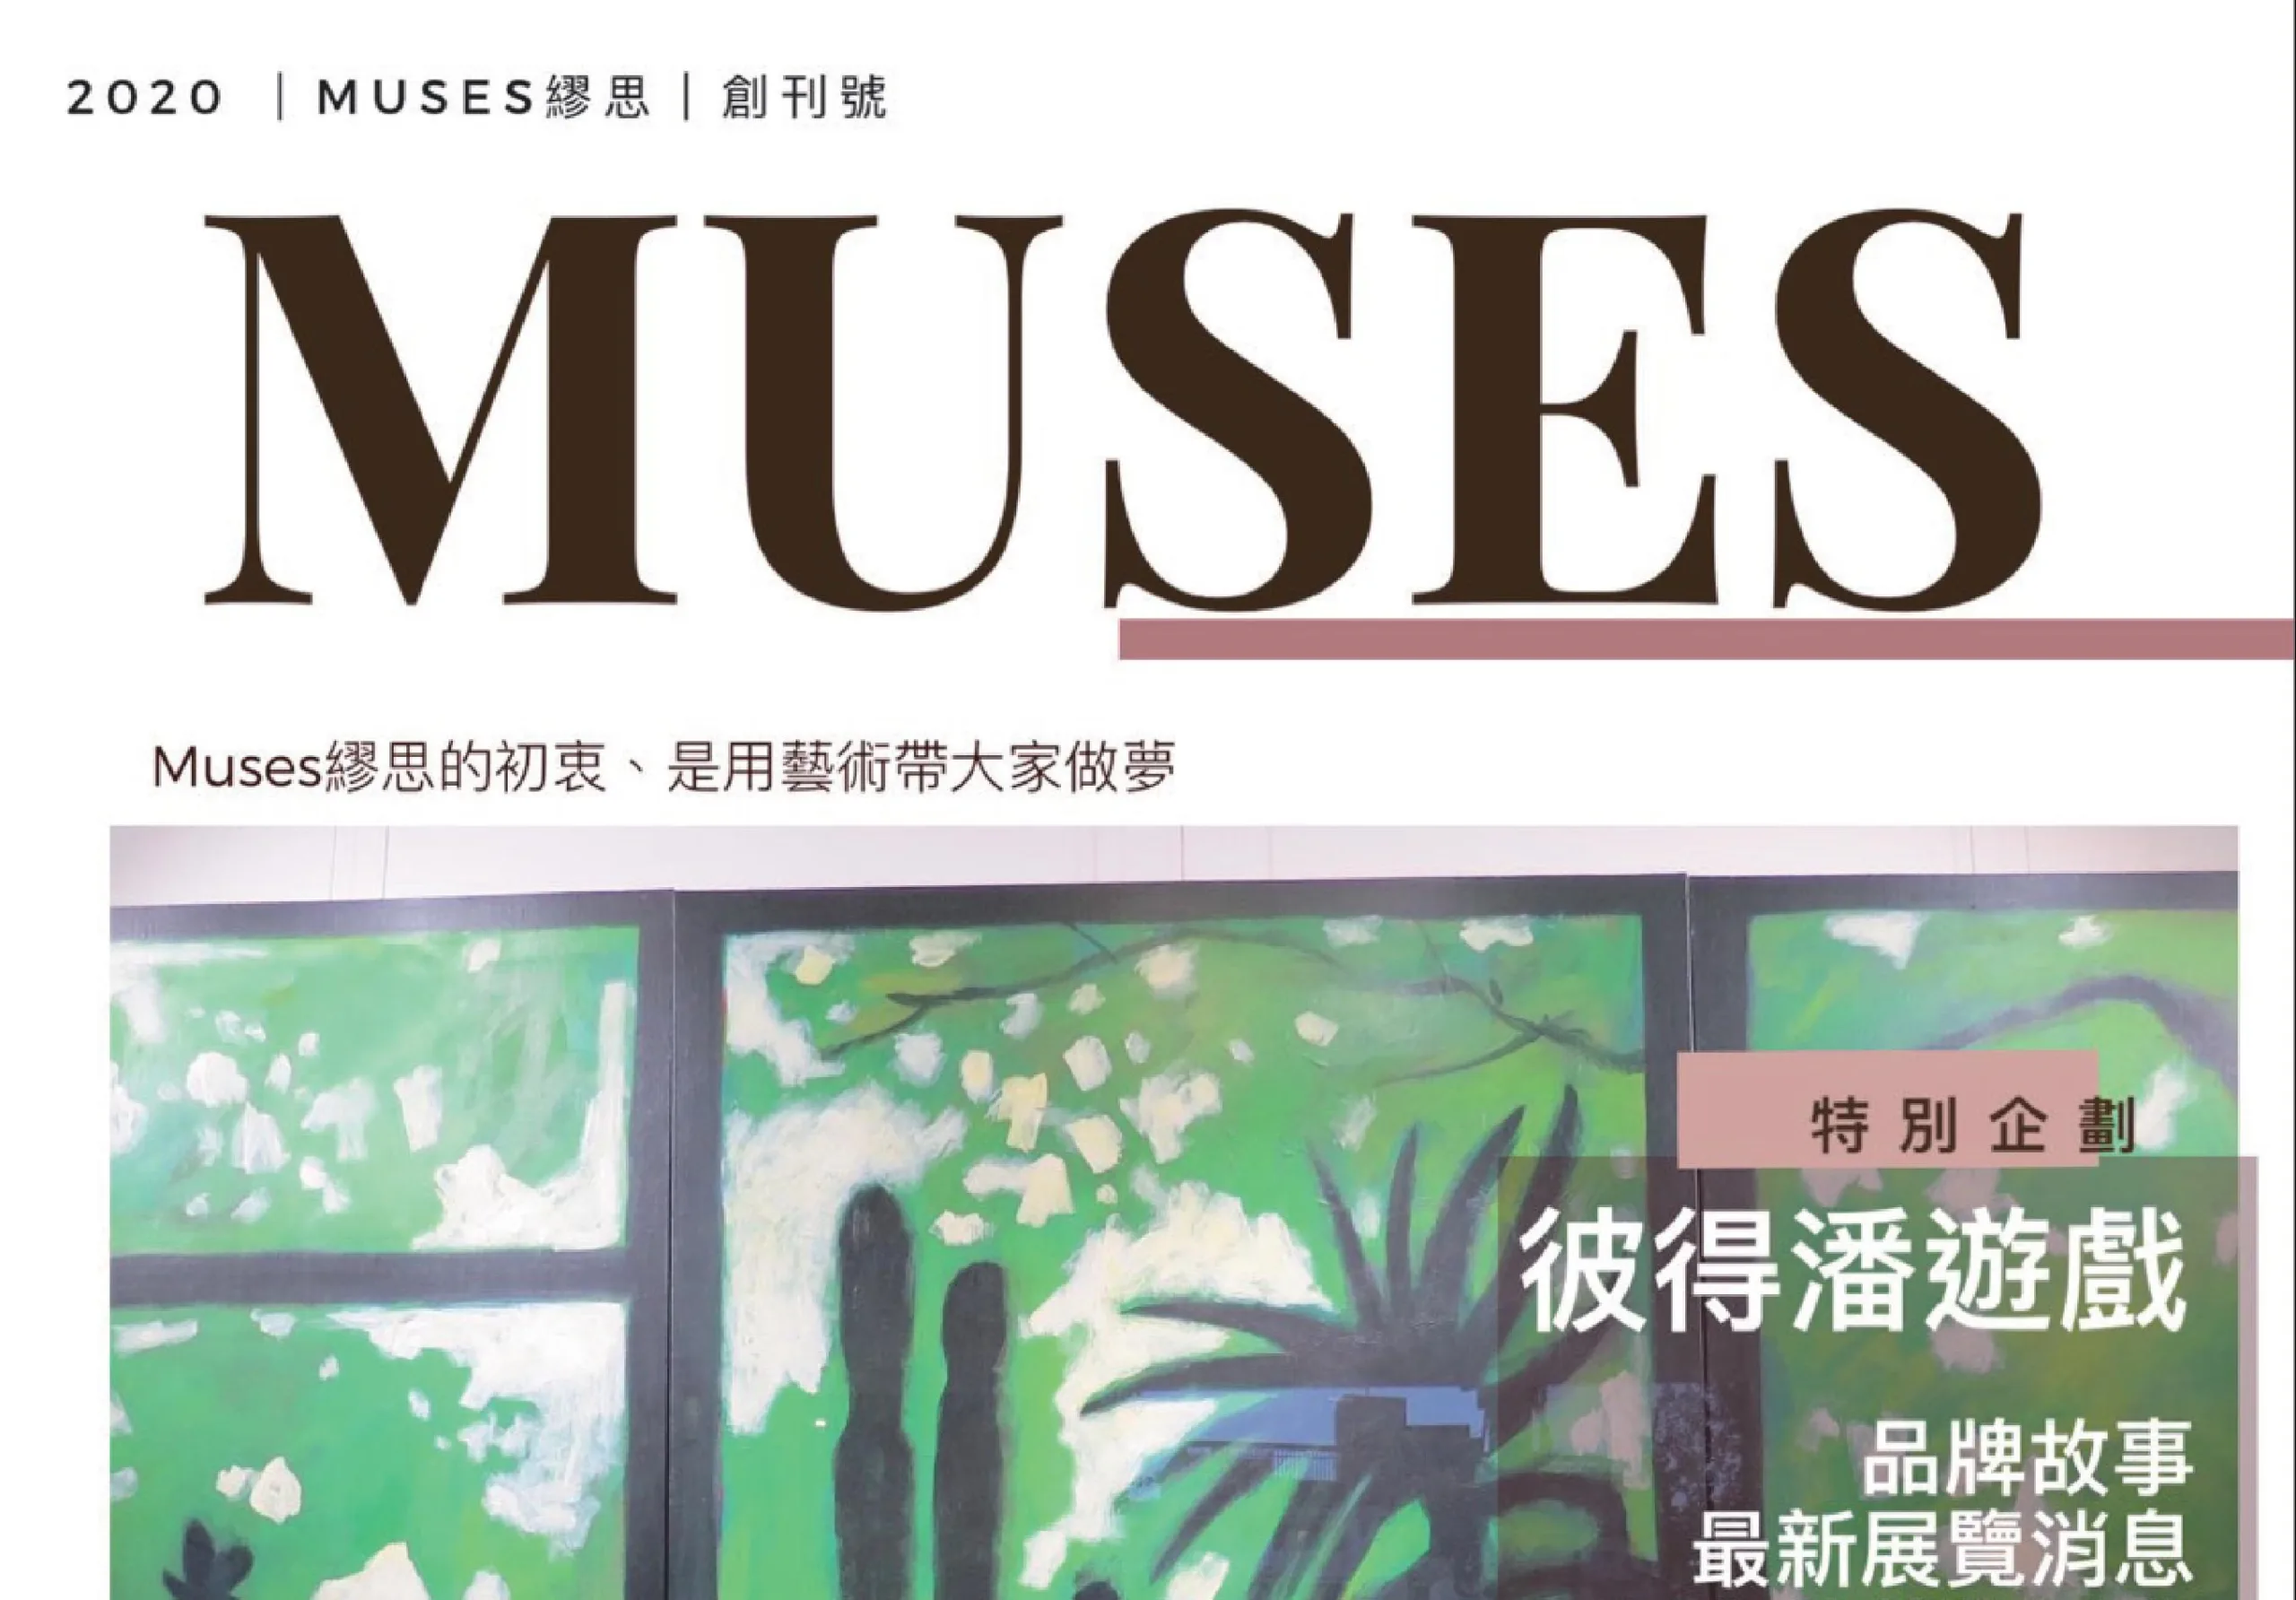 《Muses》繆思的初衷 是用藝術帶大家做夢